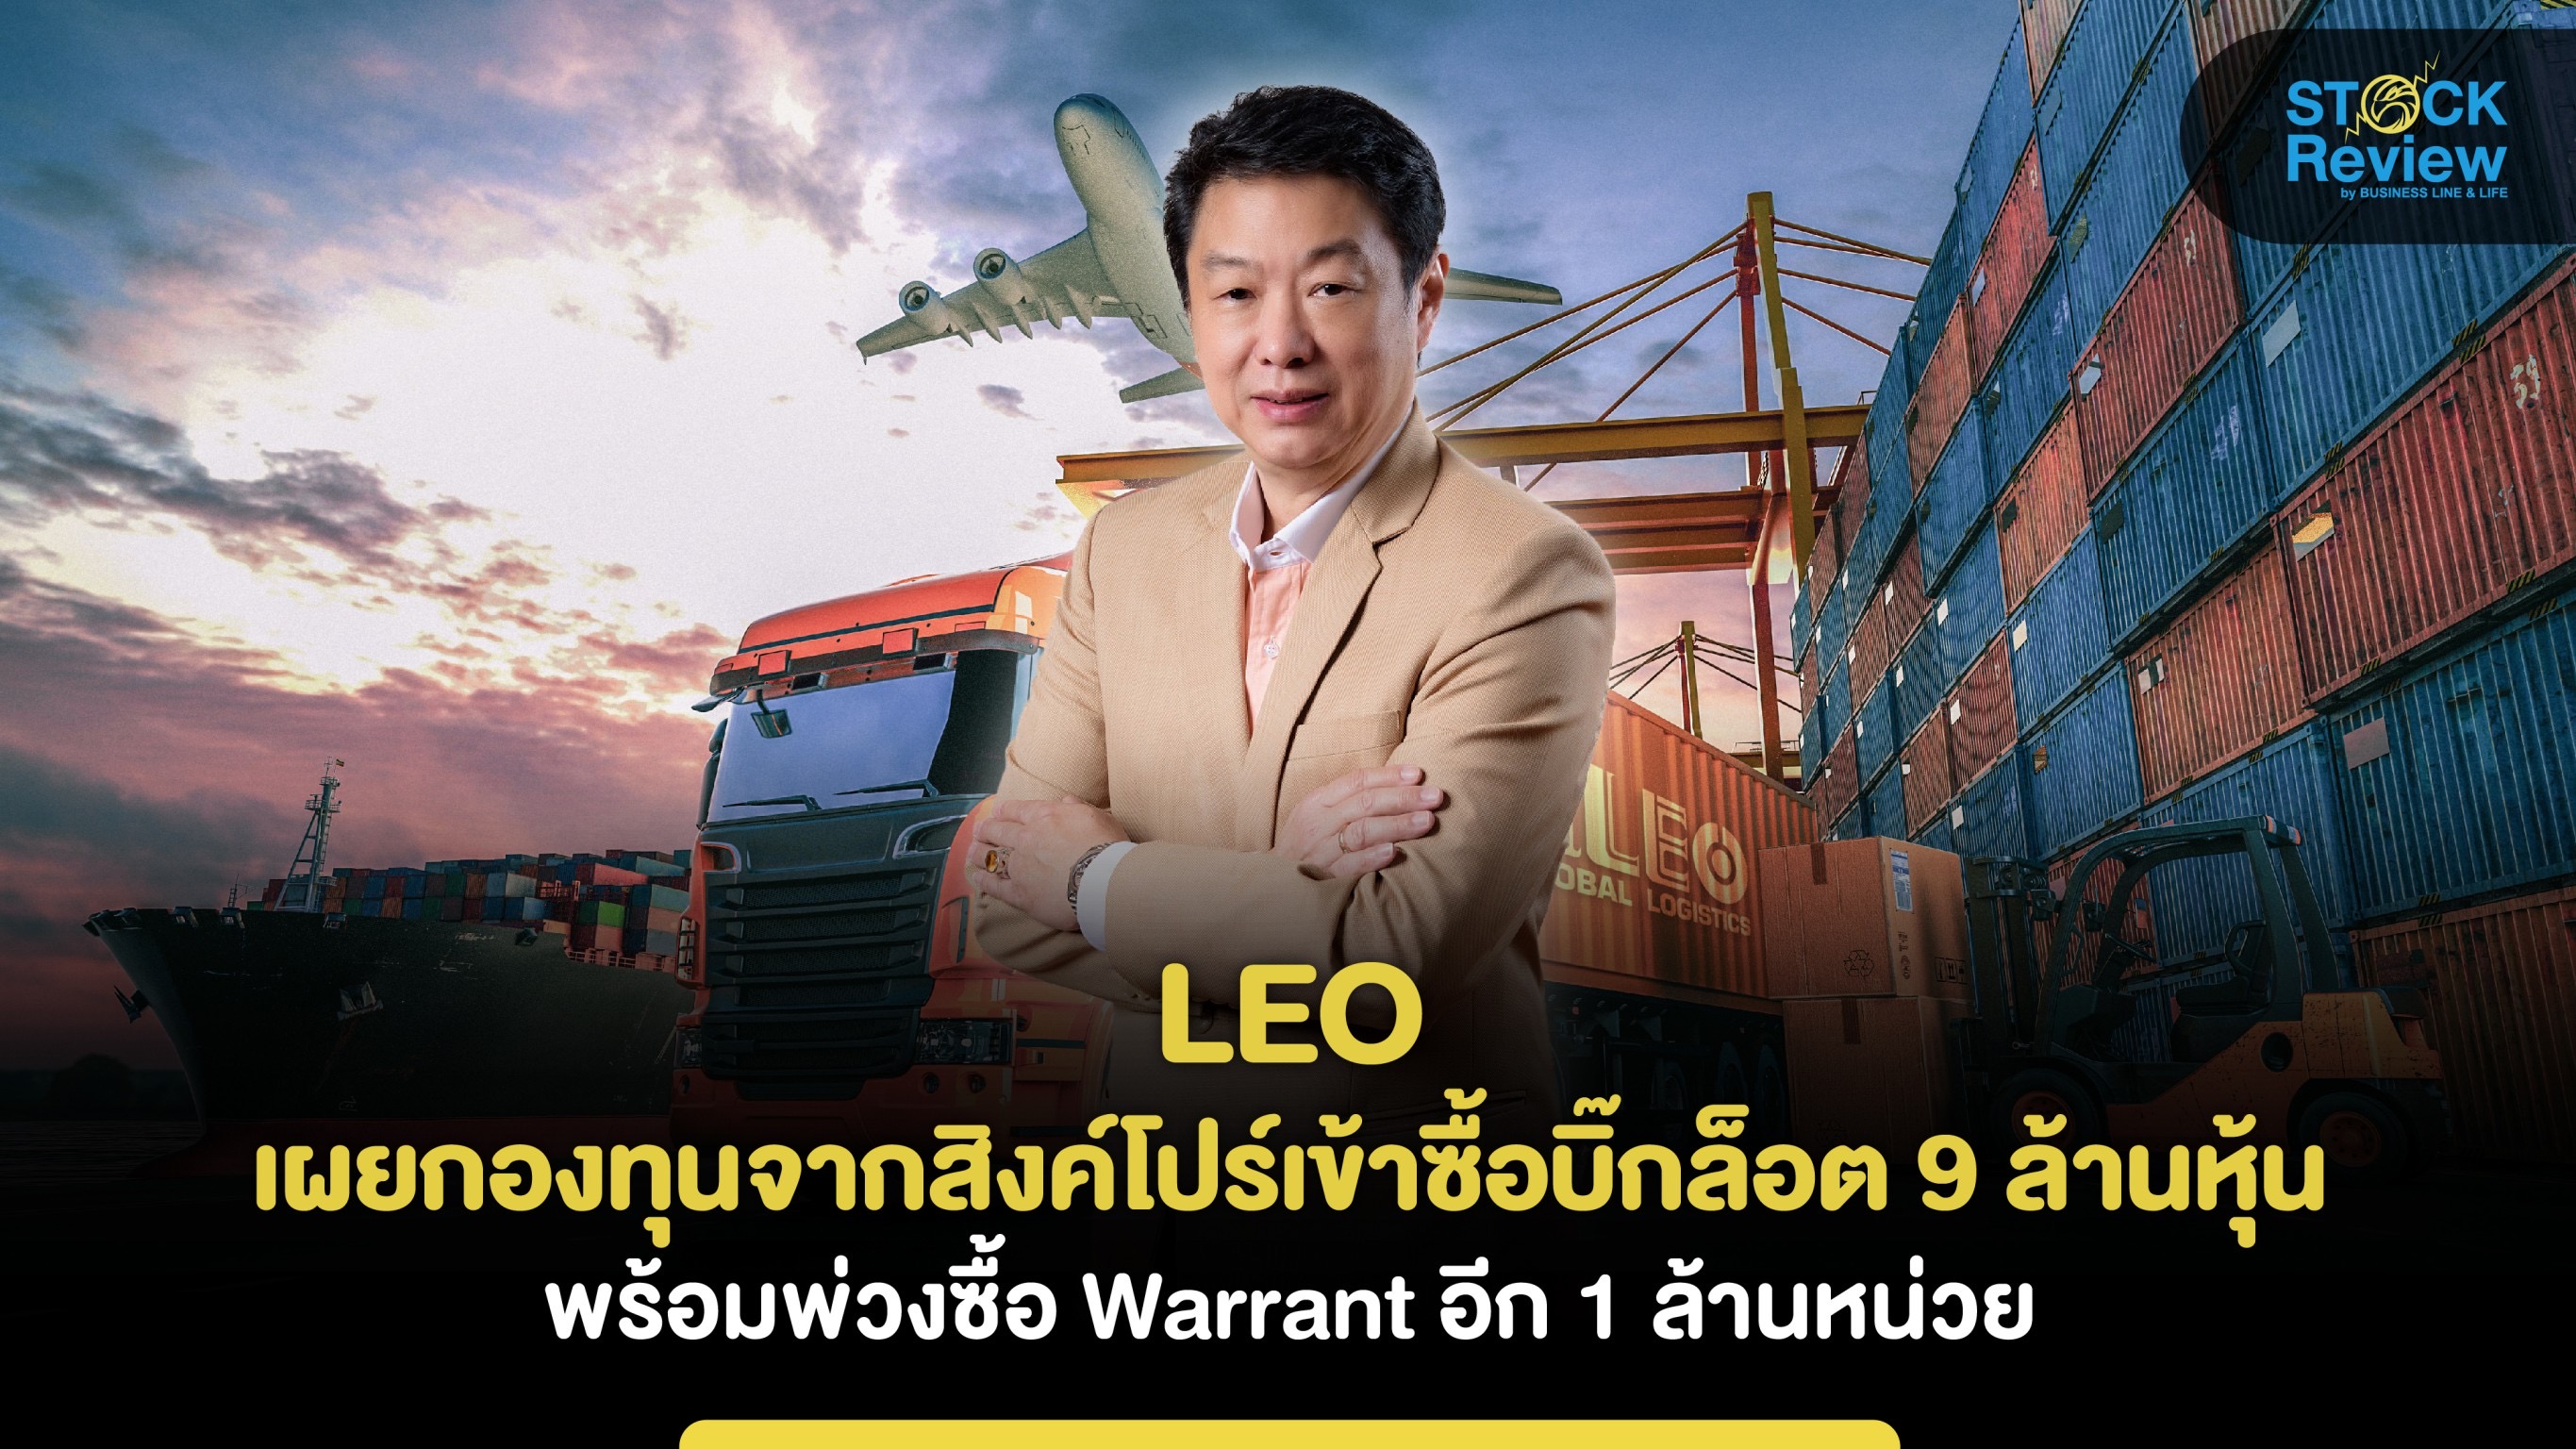 LEO เผยเหตุกองทุนจากสิงค์โปร์เข้าซื้อบิ๊กล็อต 9 ล้านหุ้น พร้อมพ่วงซื้อ Warrant อีก 1 ล้านหน่วย เชื่อมั่นศักยภาพ